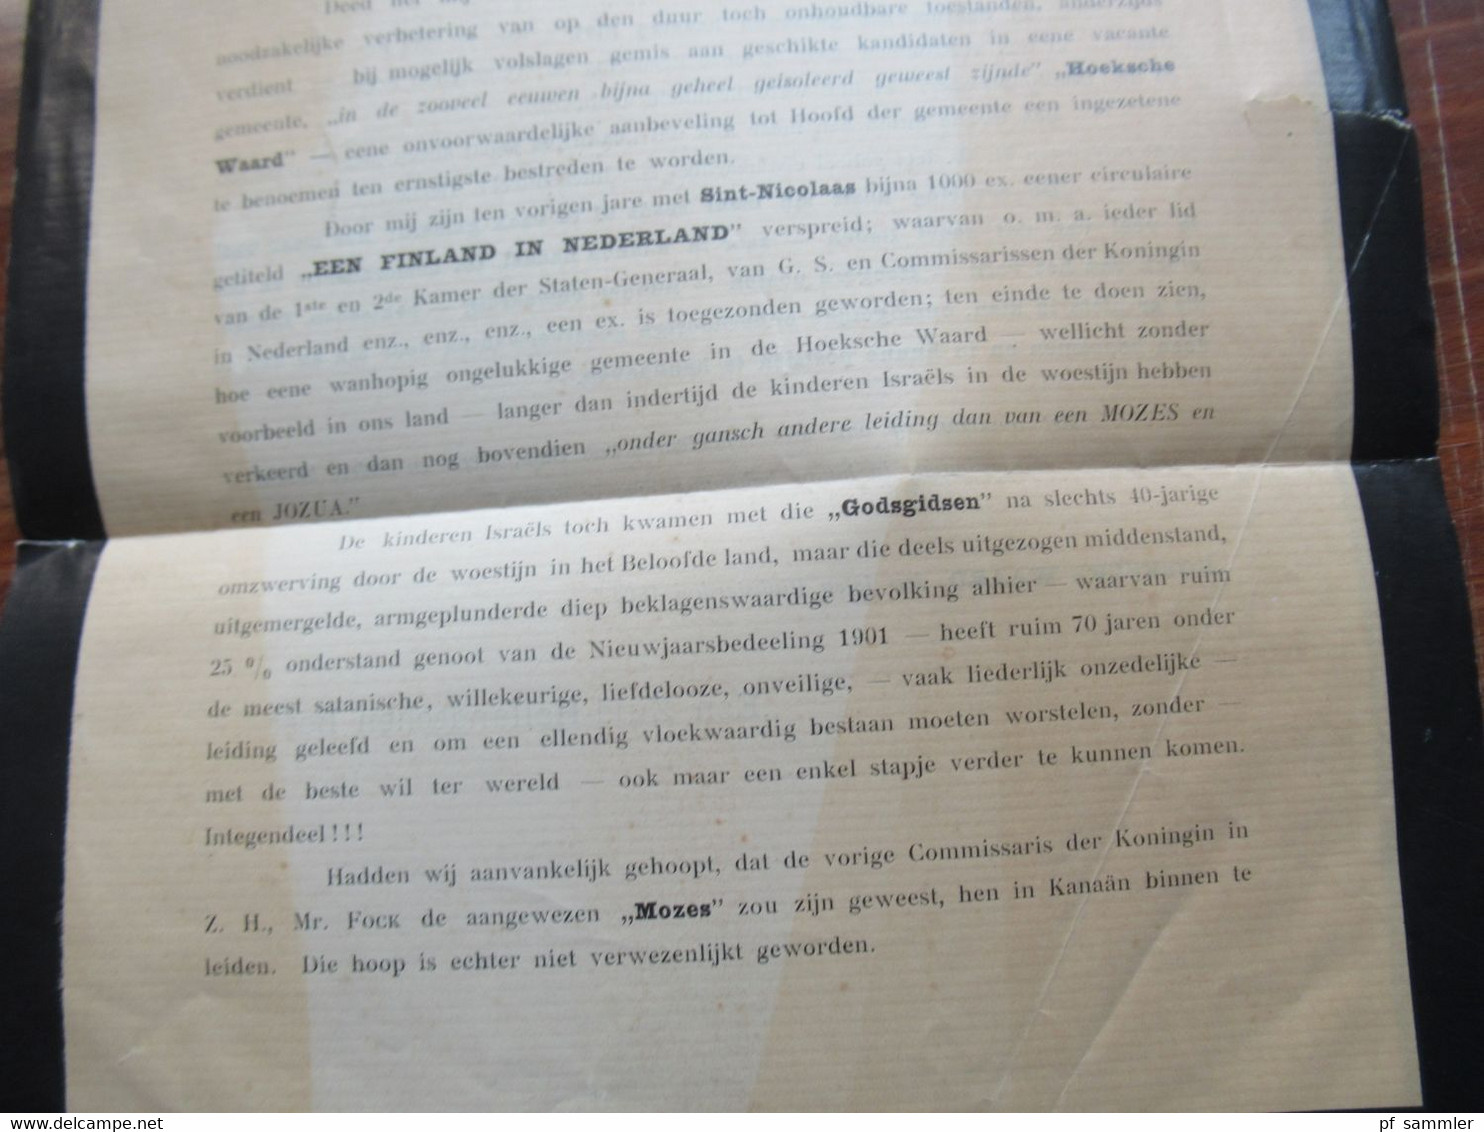 Niederlande 1901 Present Exemplaar Ruin 70 jaren in de Woestijn gedruckter Brief mit schwarzem Rand / Trauerbrief ?!